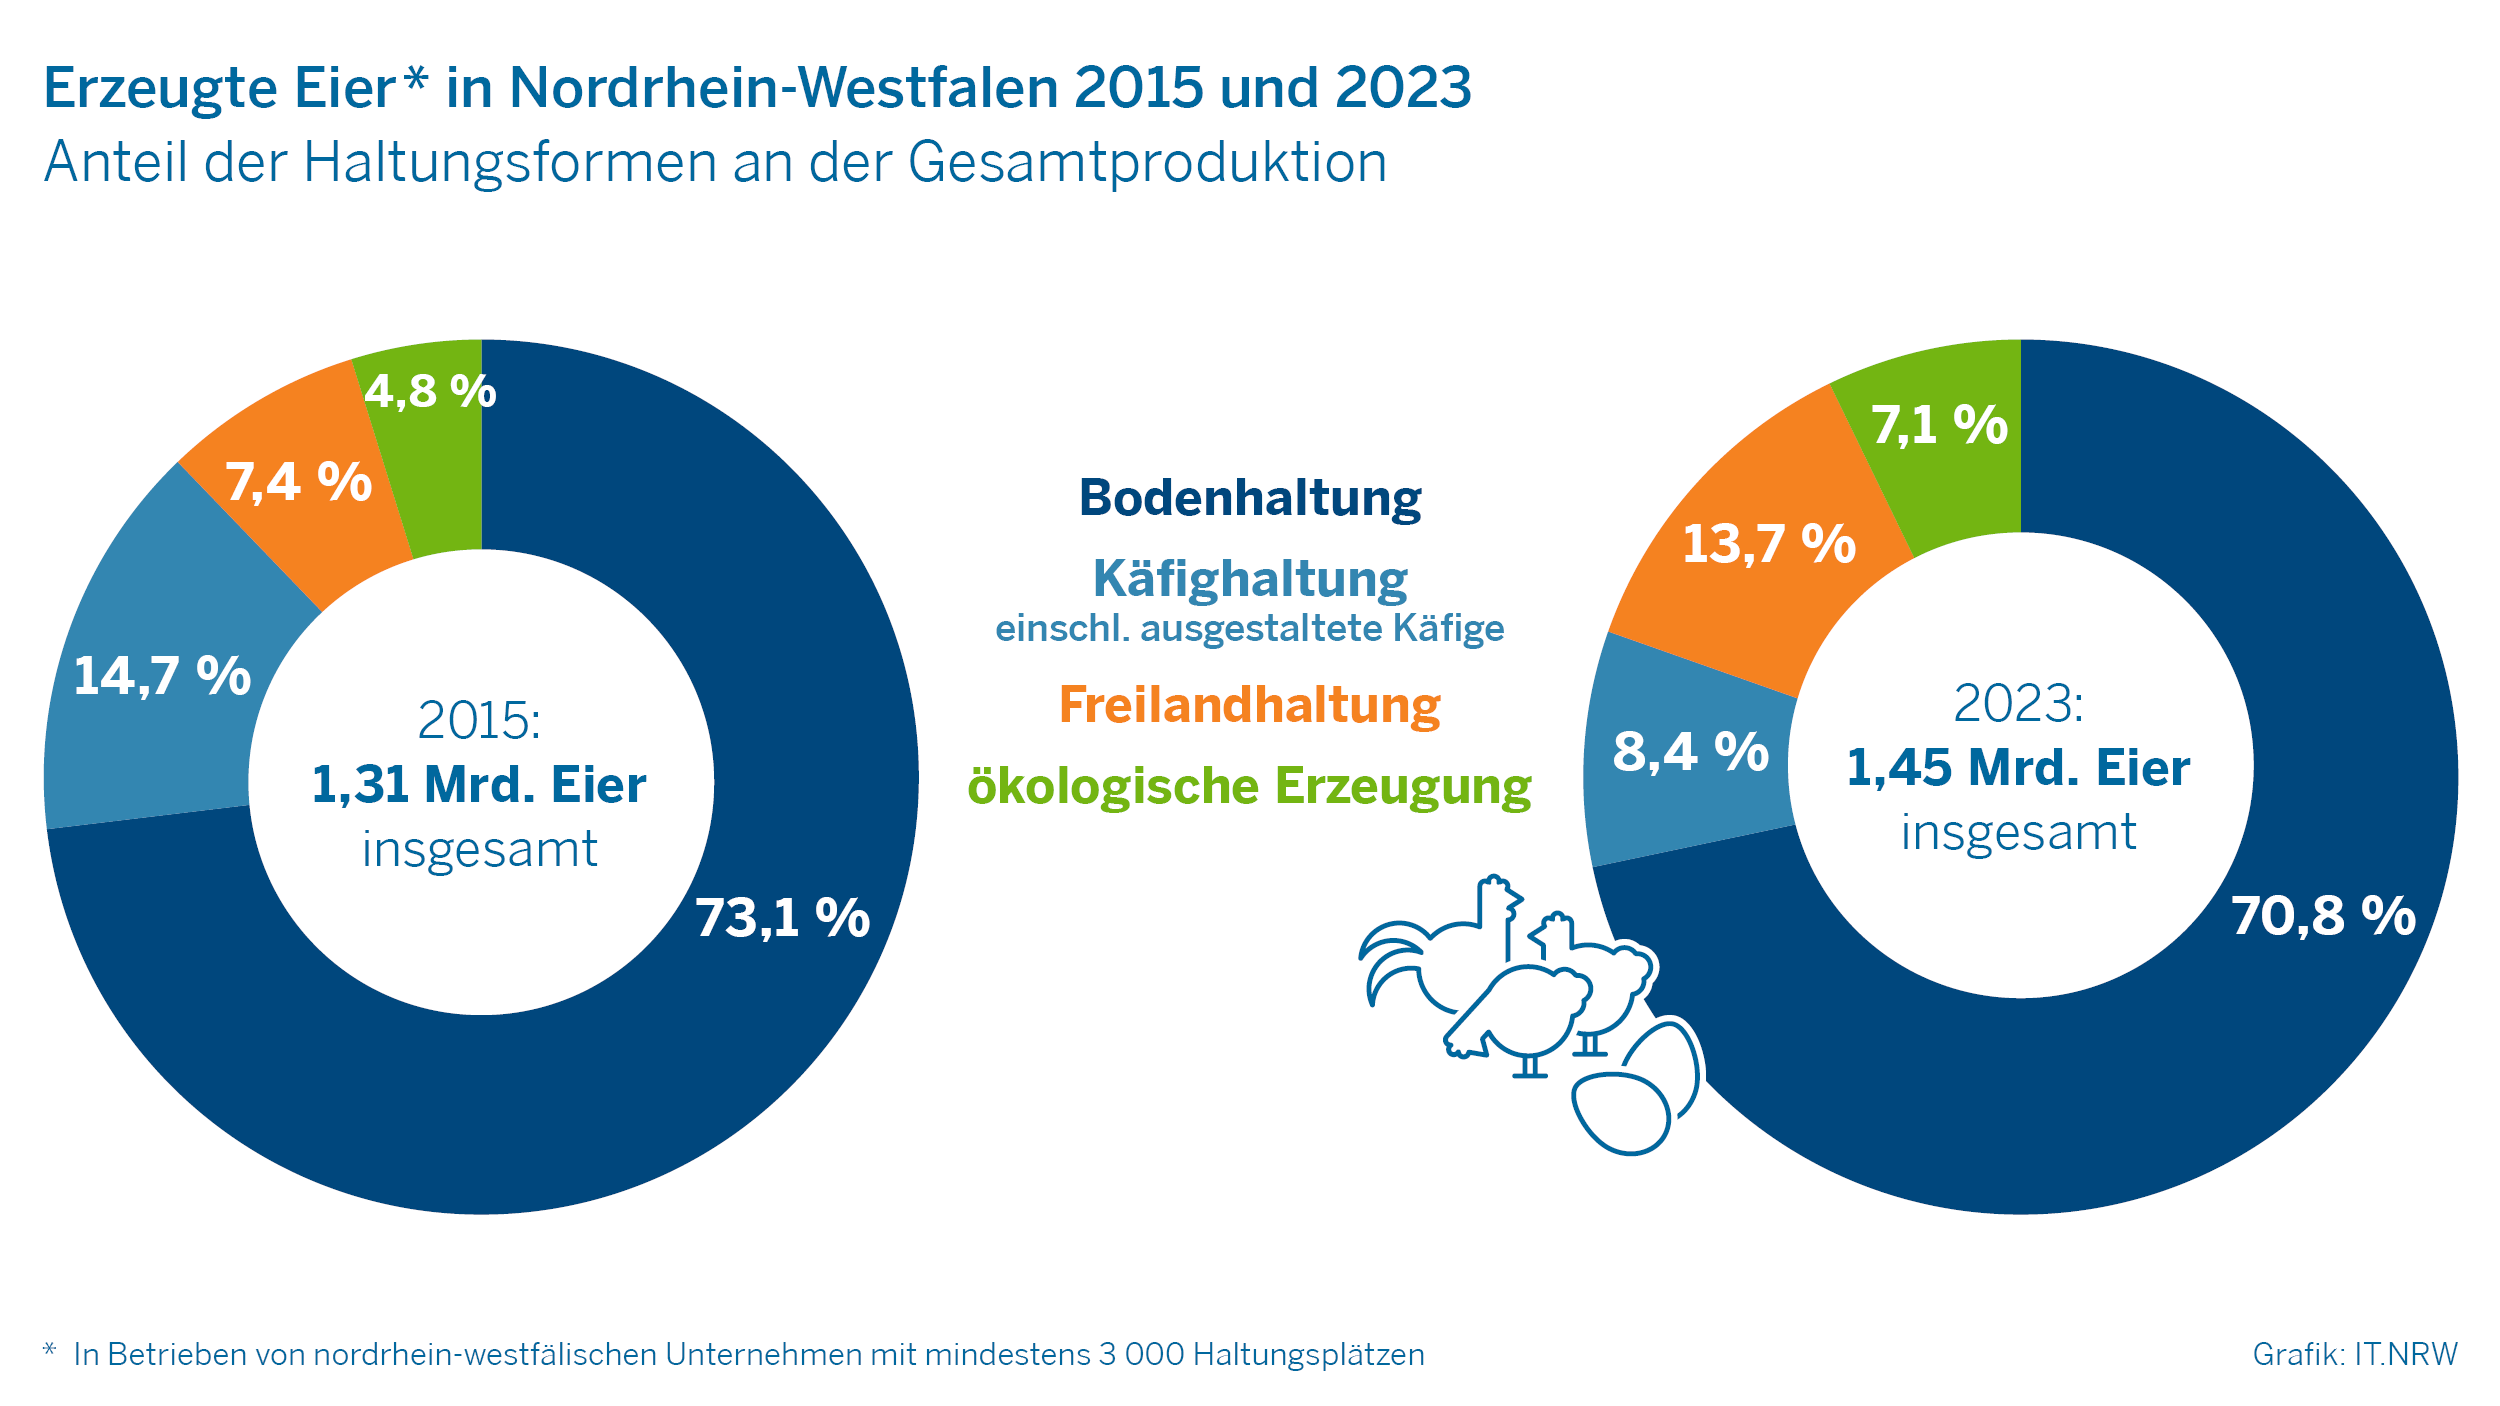 Erzeugte Eier in Nordrhein-Westfalen 2015 und 2023